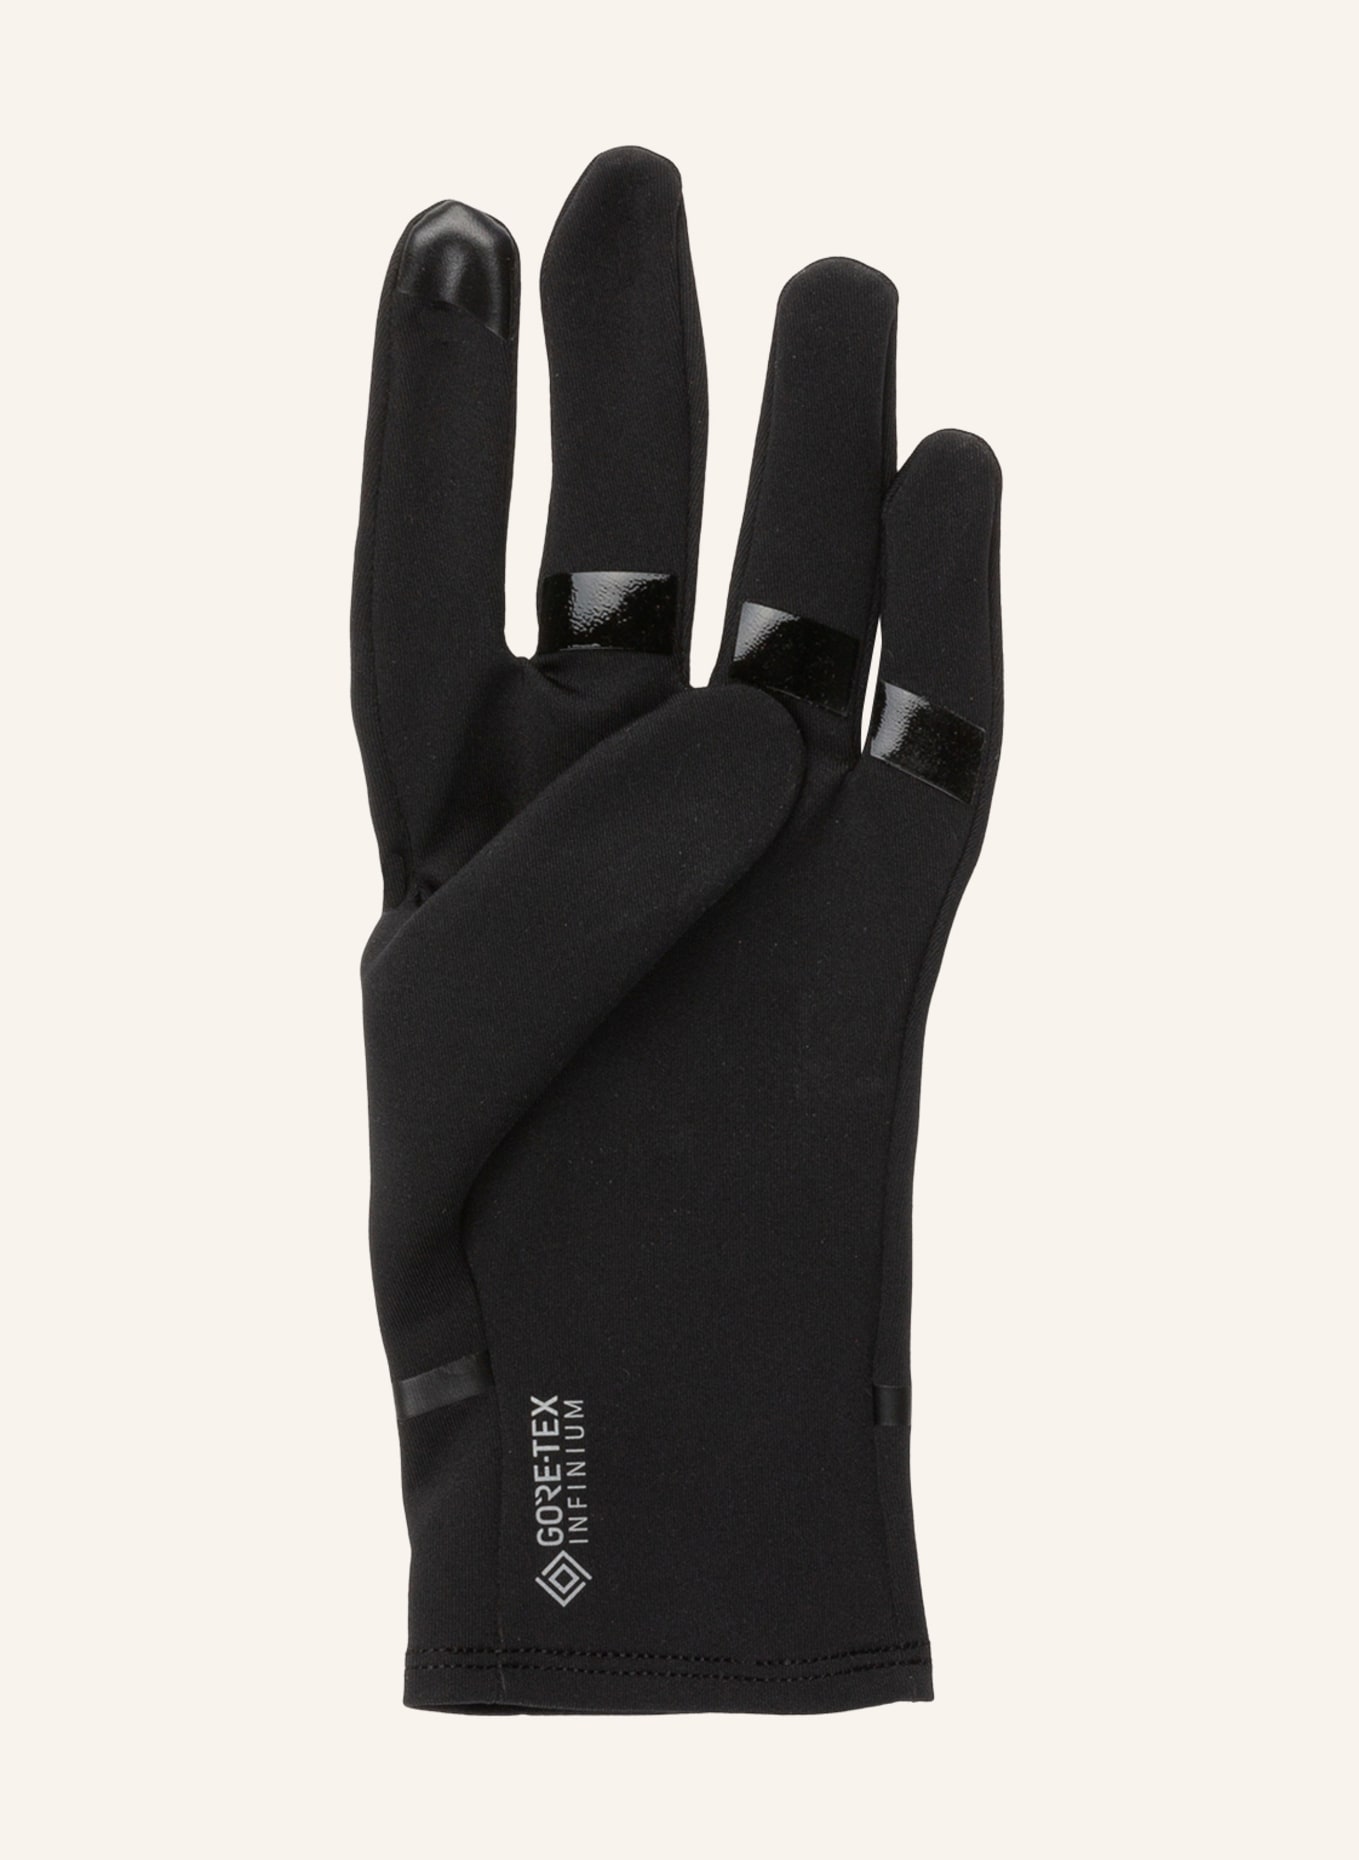 GORE RUNNING WEAR Multisport-Handschuhe GORE-TEX INFINIUM™ in schwarz